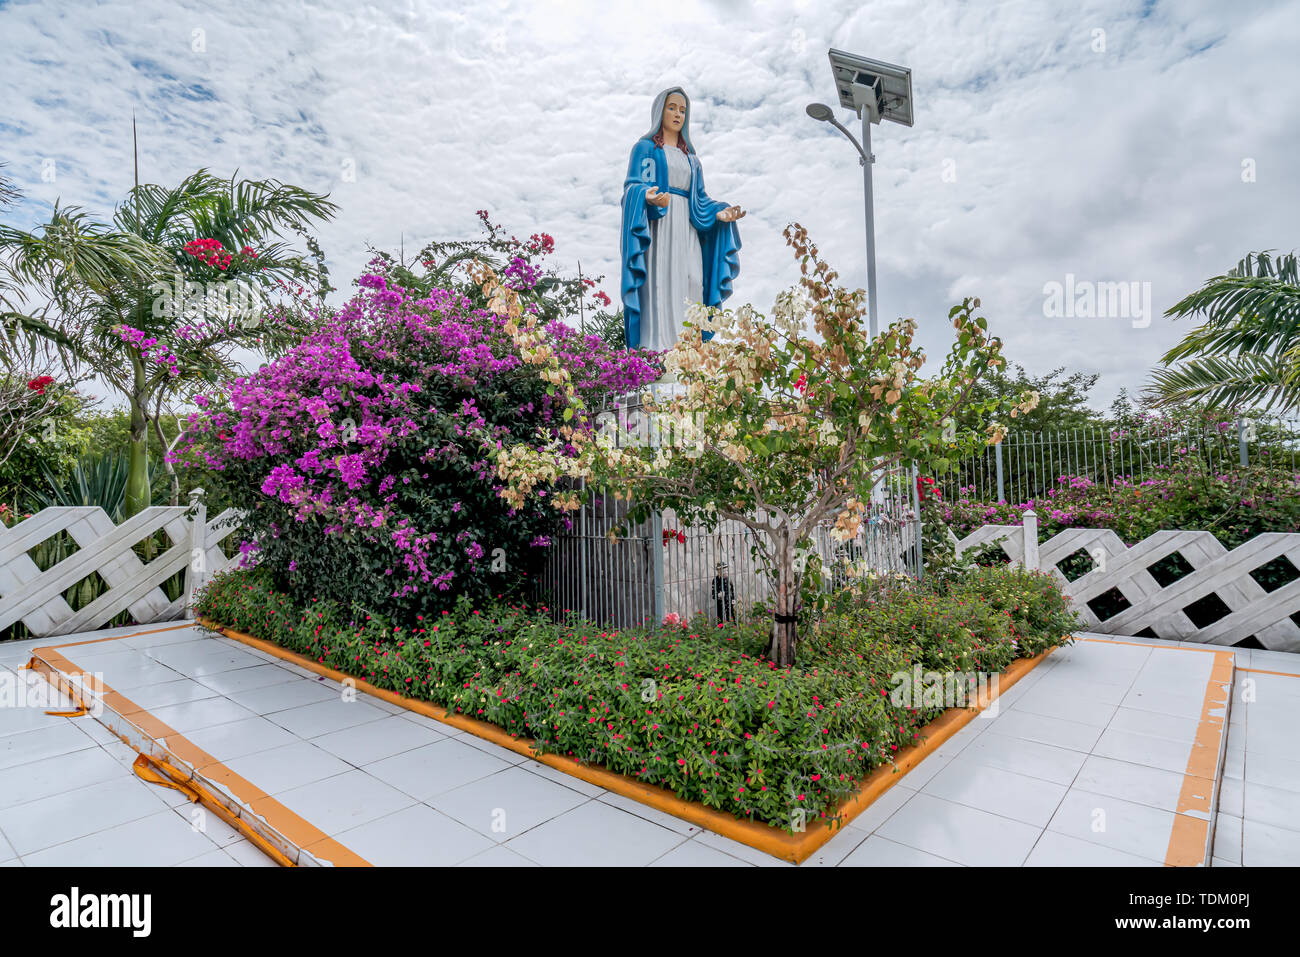 Gravatá, Serra das russas, BR-232, Pernambuco, Brasilien - Juni, 2019: schöne Statue Unserer Lieben Frau von Grace Jungfrau Maria, umgeben von Blumen. Stockfoto